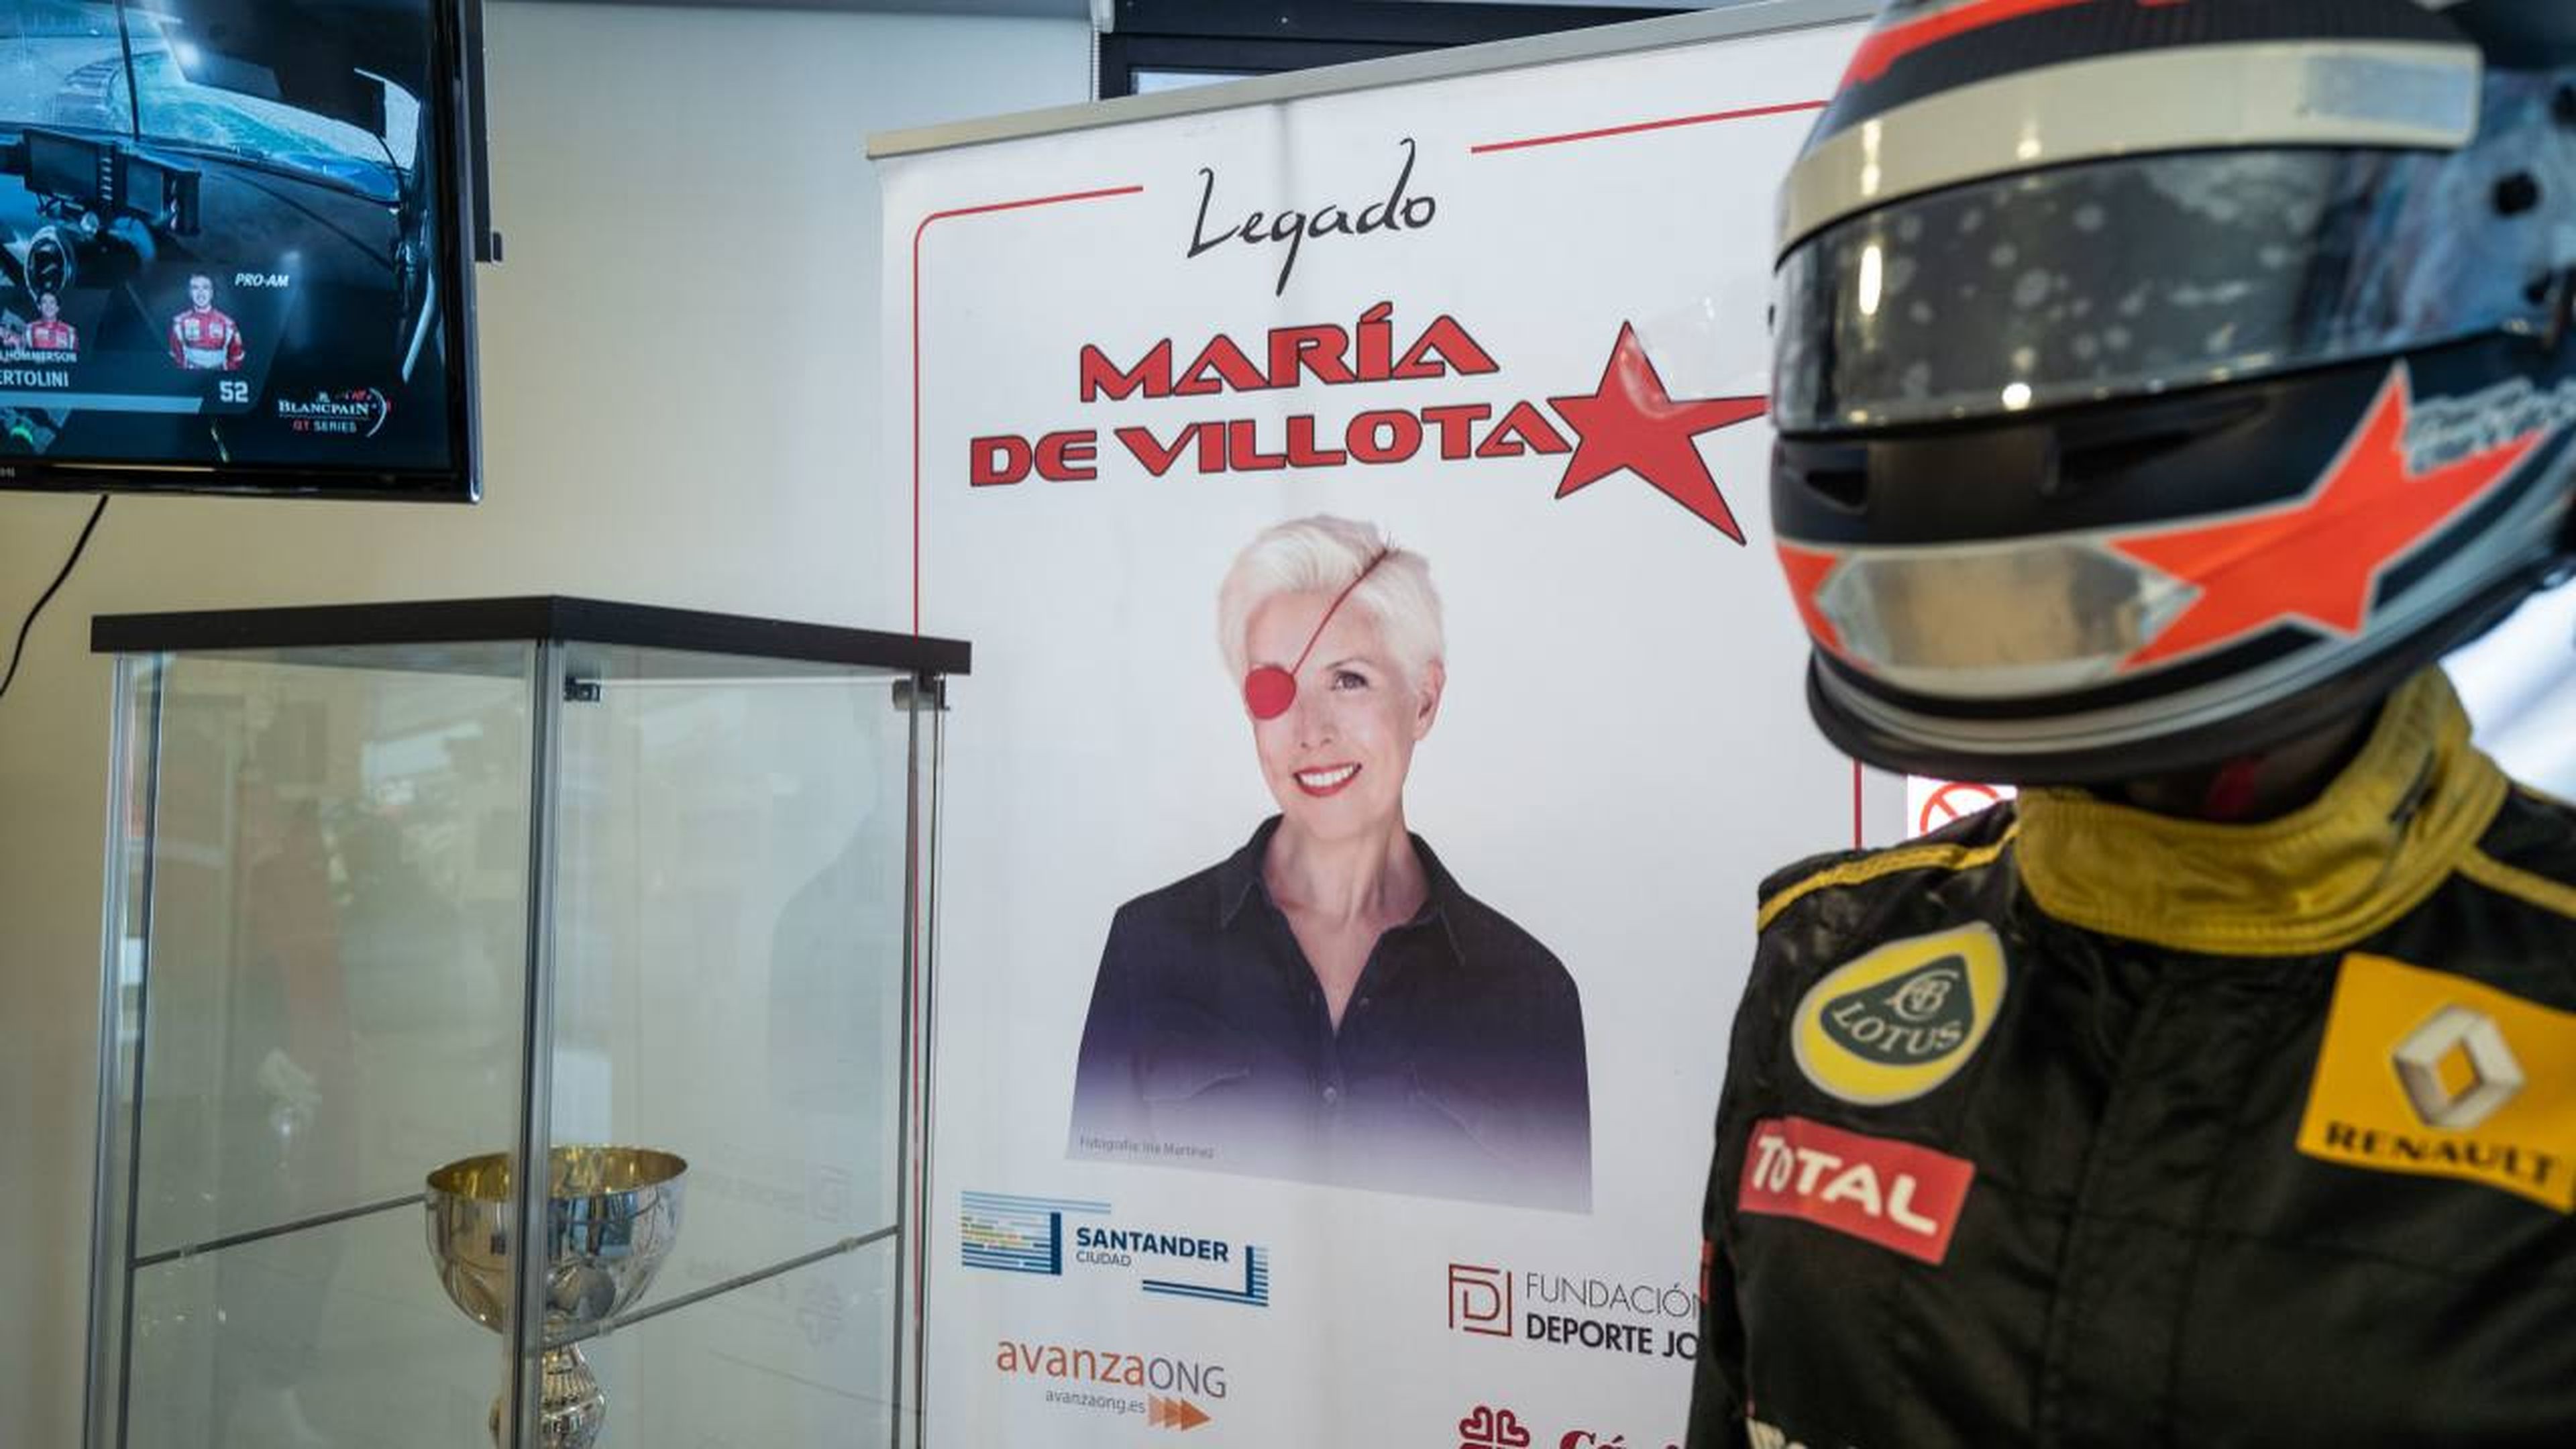 Exposición sobre María de Villota en Barcelona